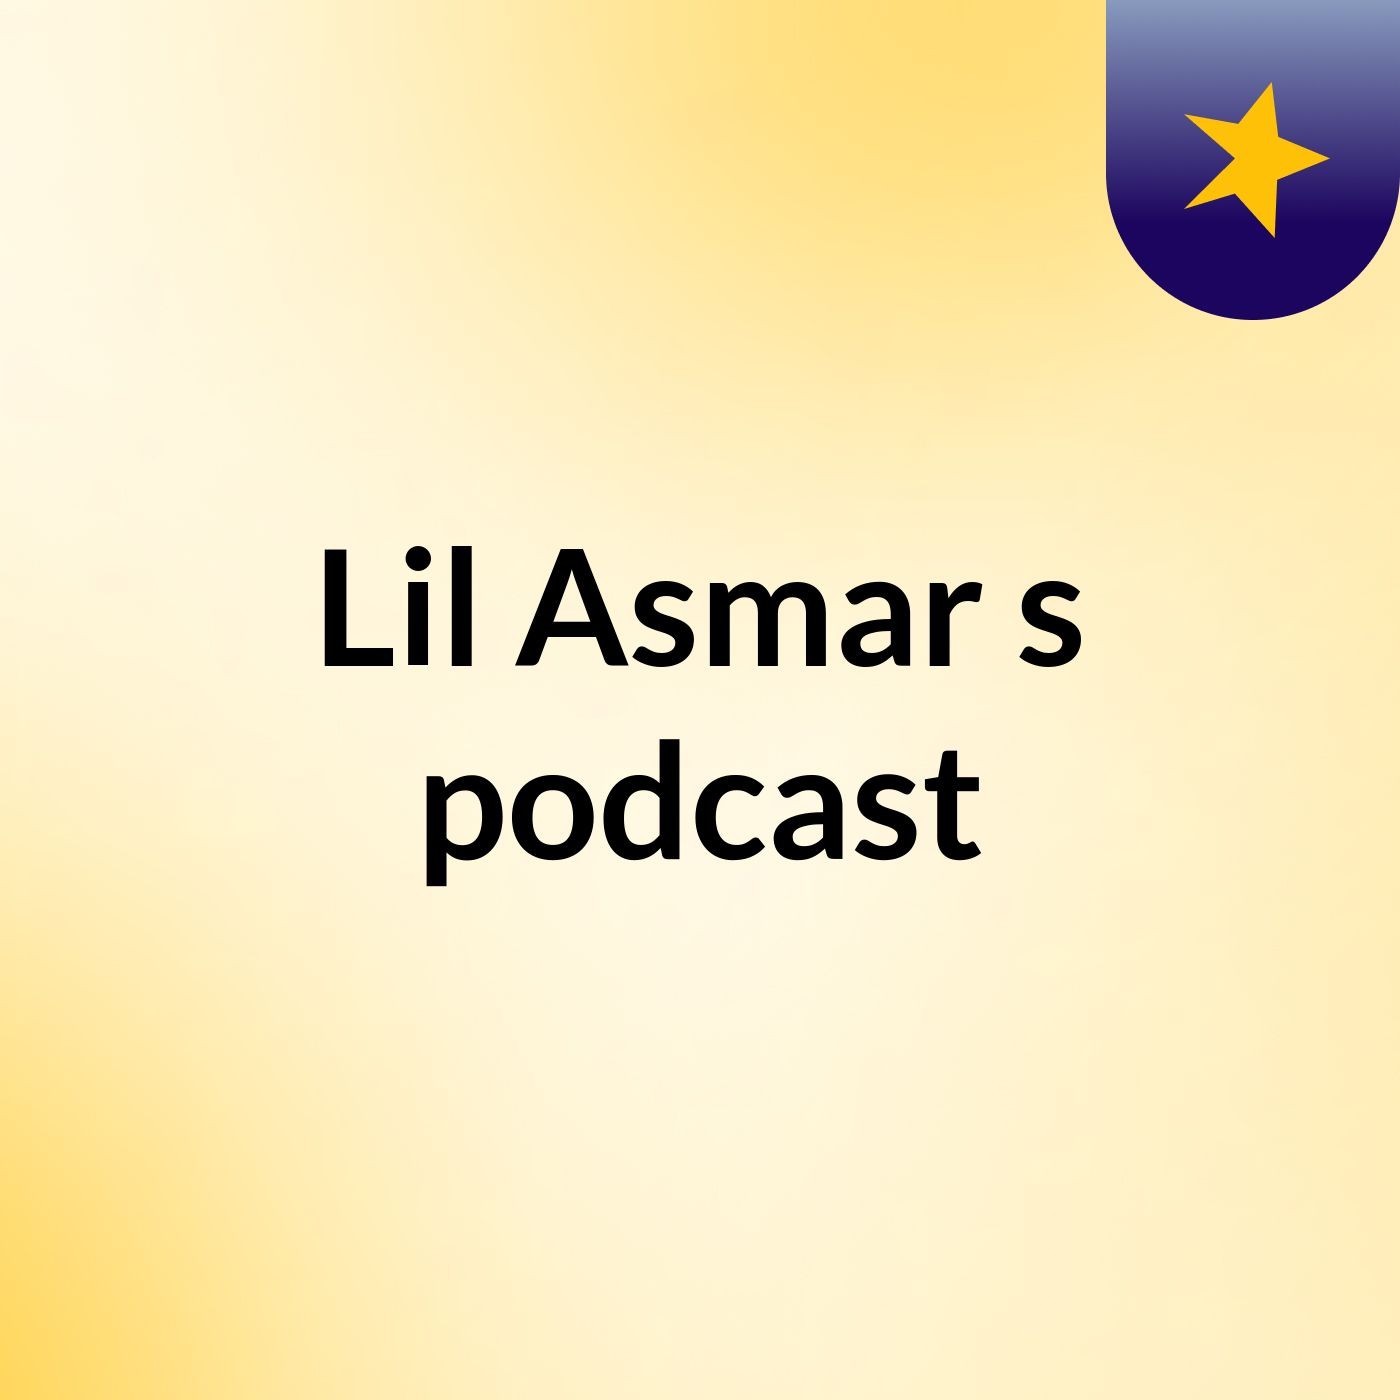 Episode 24 - Lil Asmar's podcast